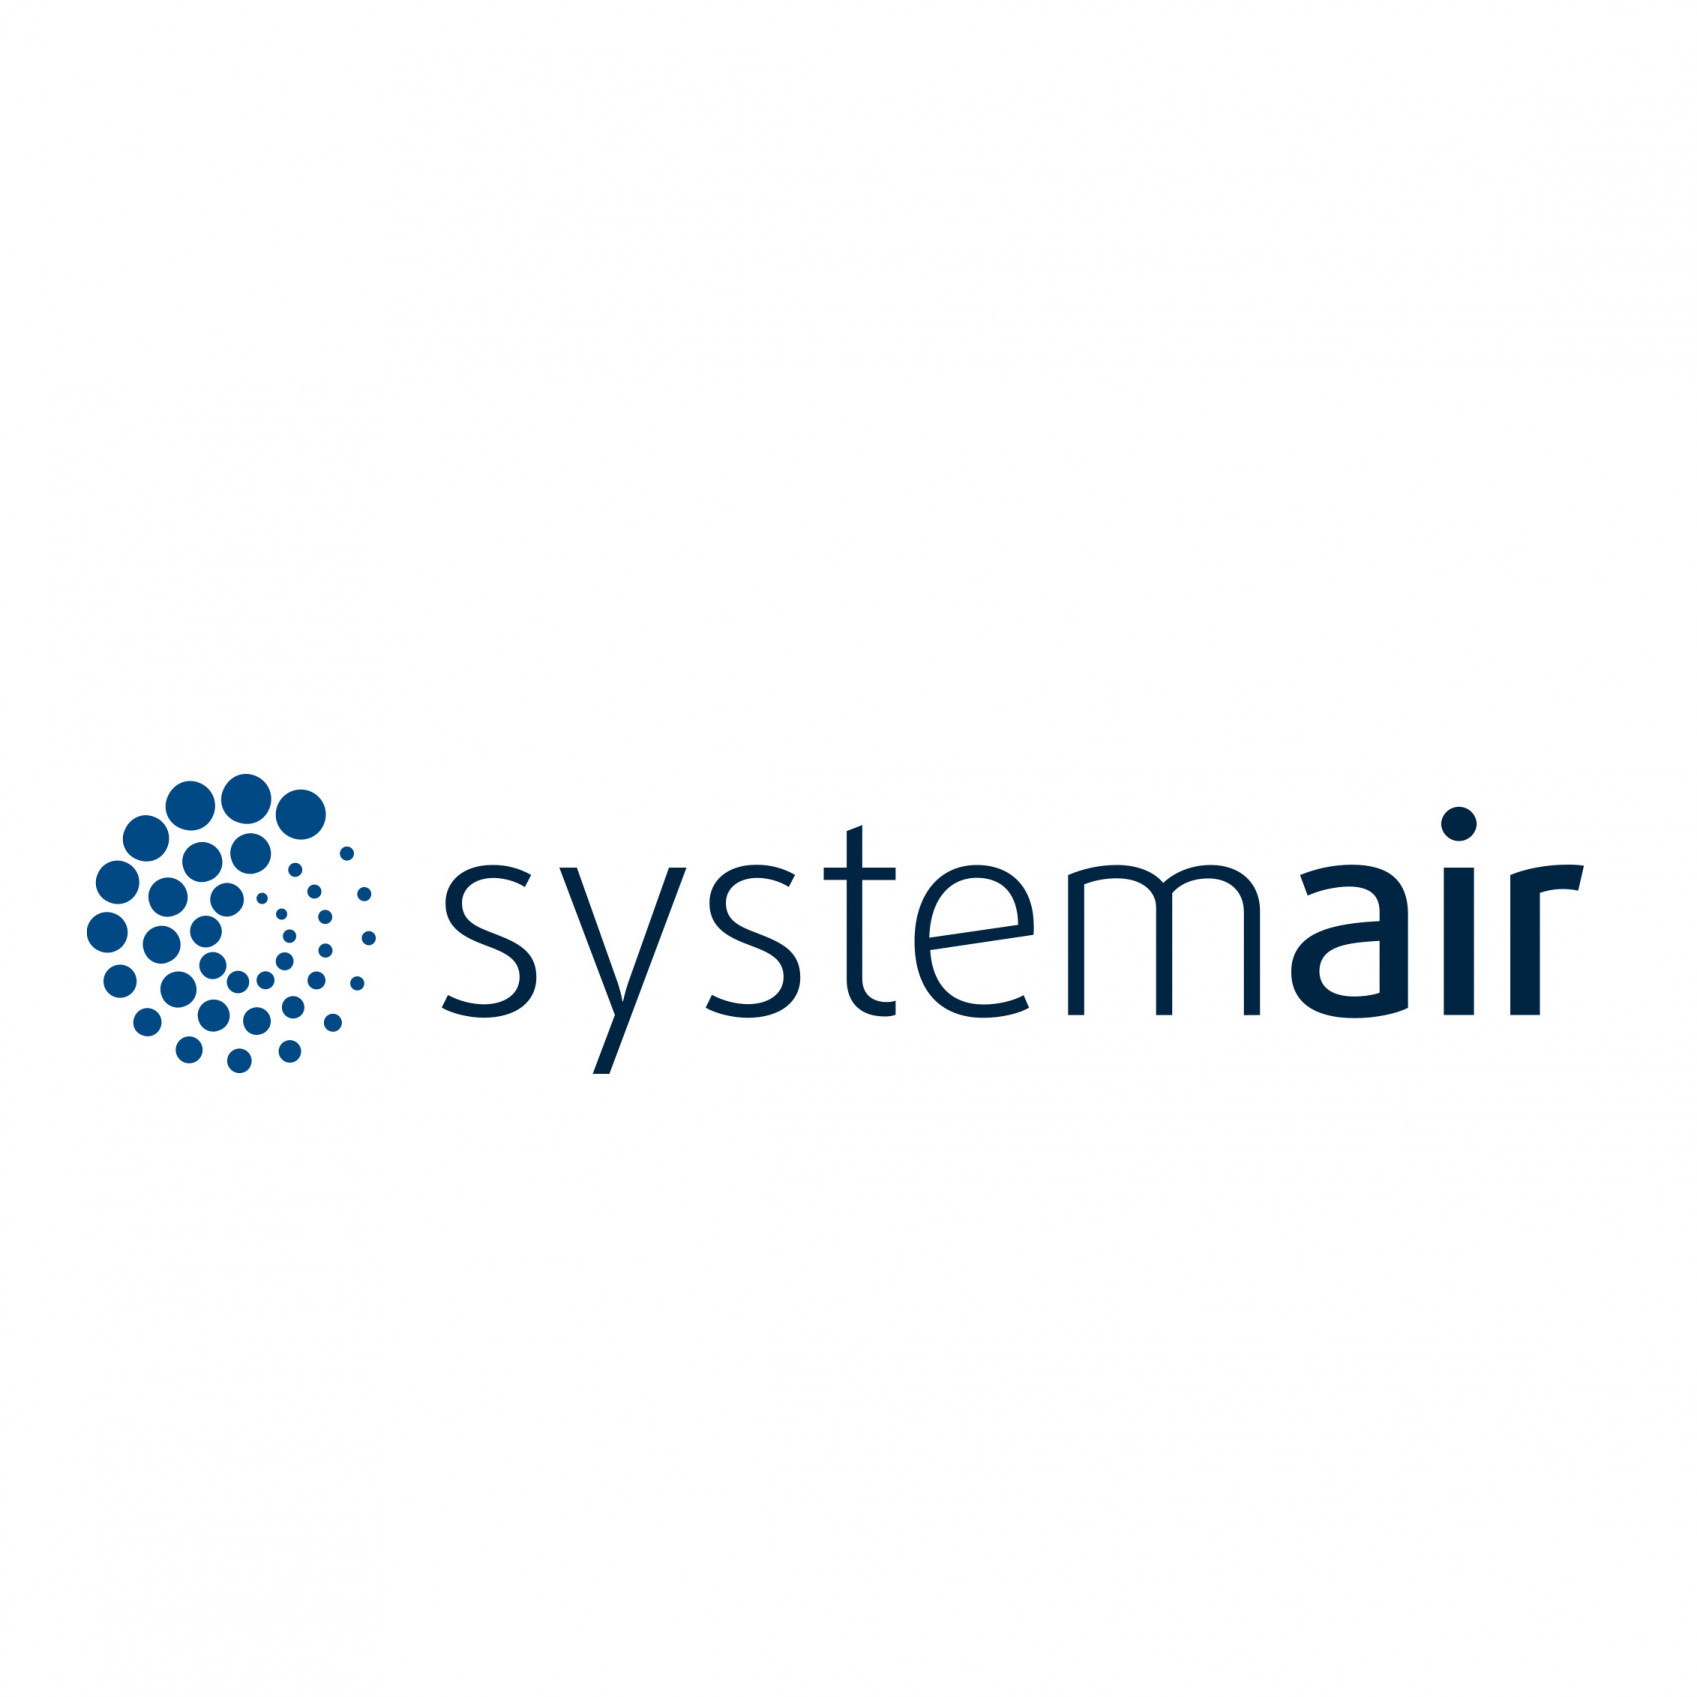 SYSTEMAIR AS - Systemair - Parim valik kvaliteetse ventilatsiooni ja mugava sisekliima tagamiseks!